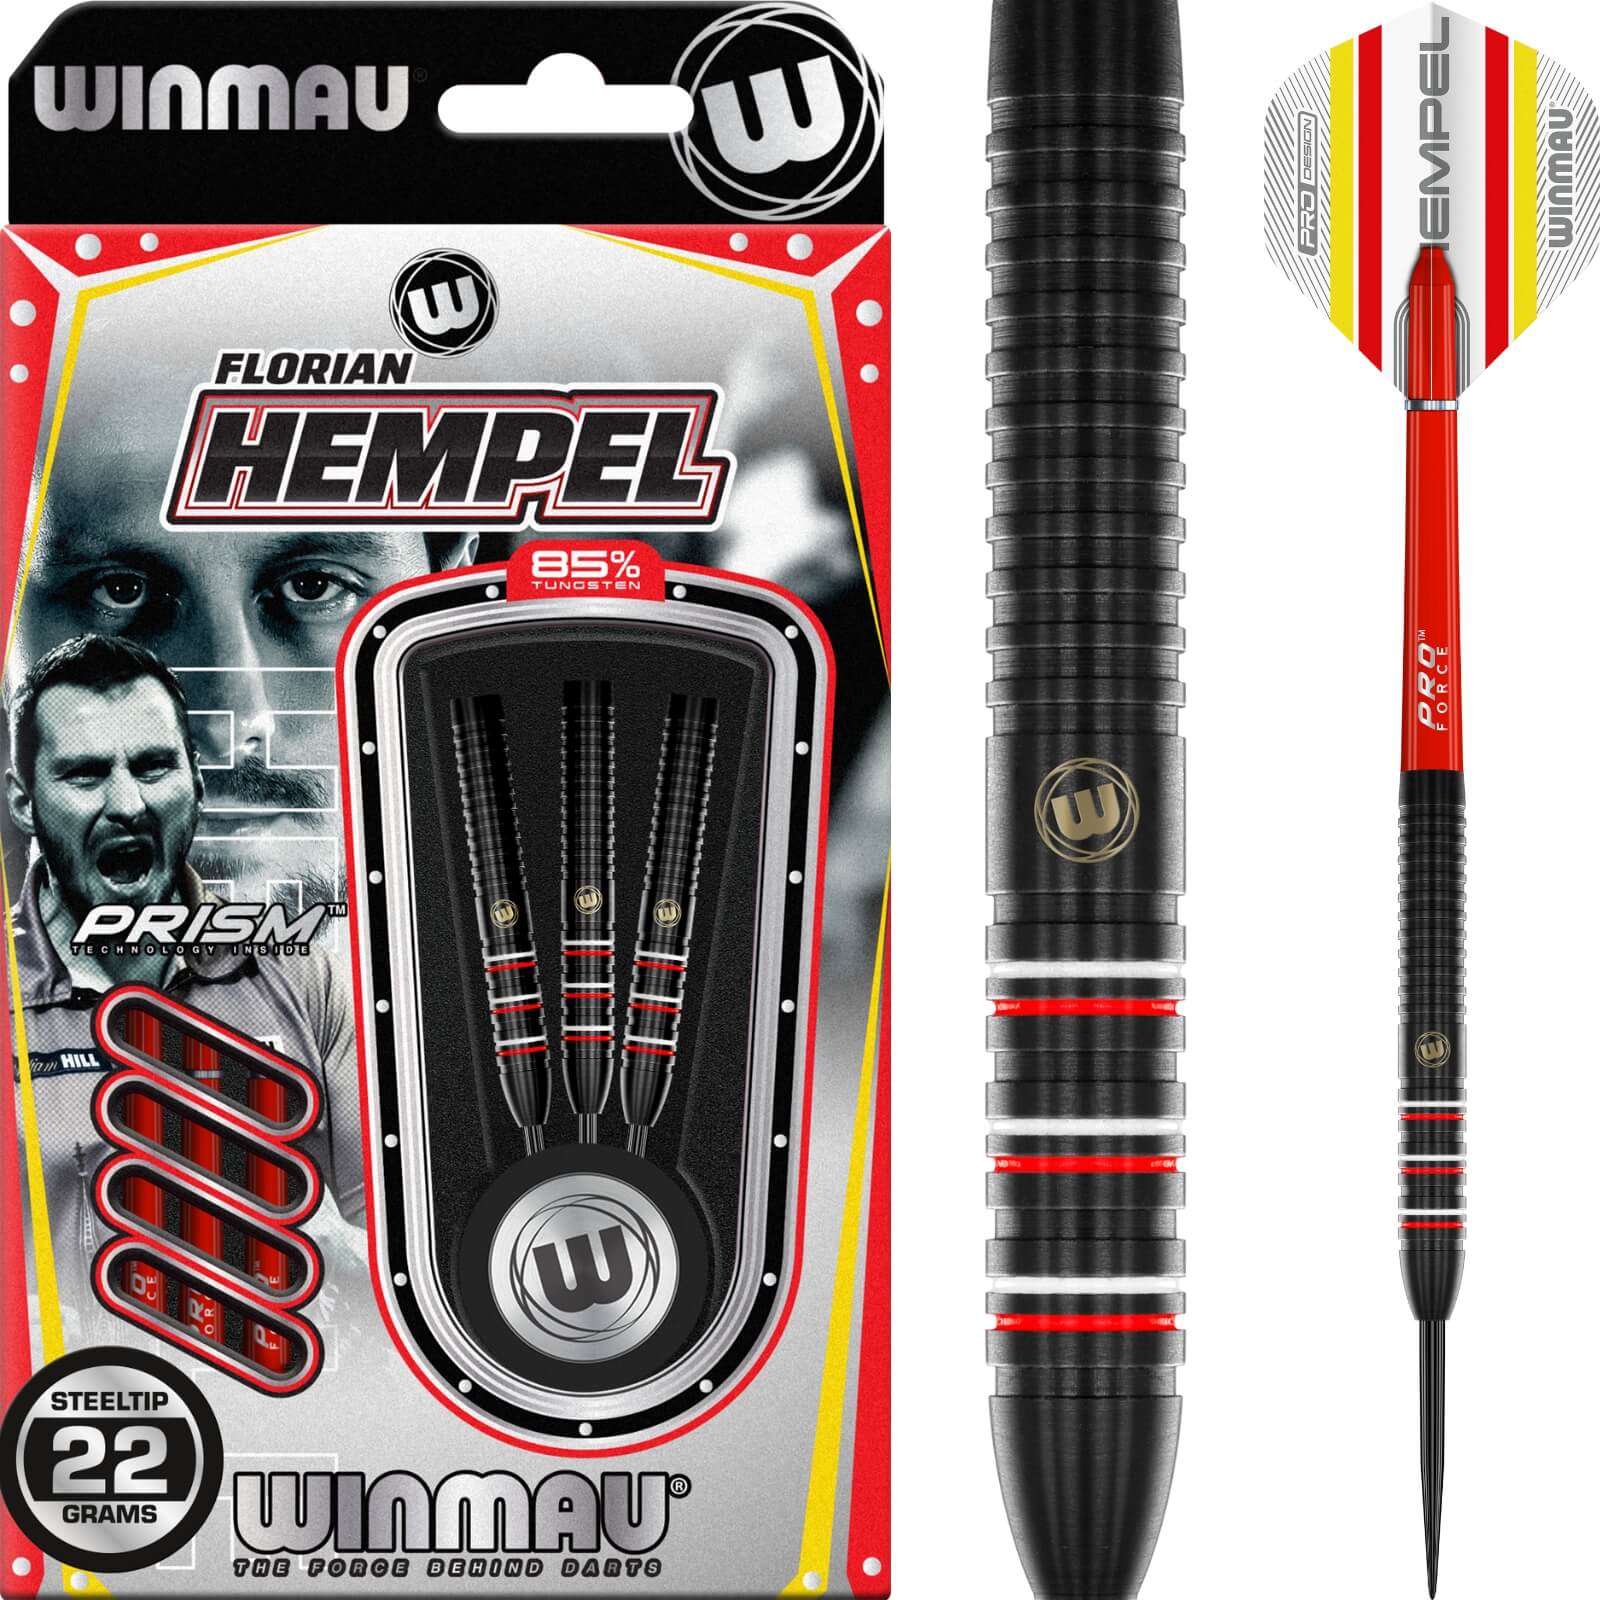 Darts - Winmau - Florian Hempel 85 Pro Series Darts - Steel Tip - 85% Tungsten - 22g 24g 